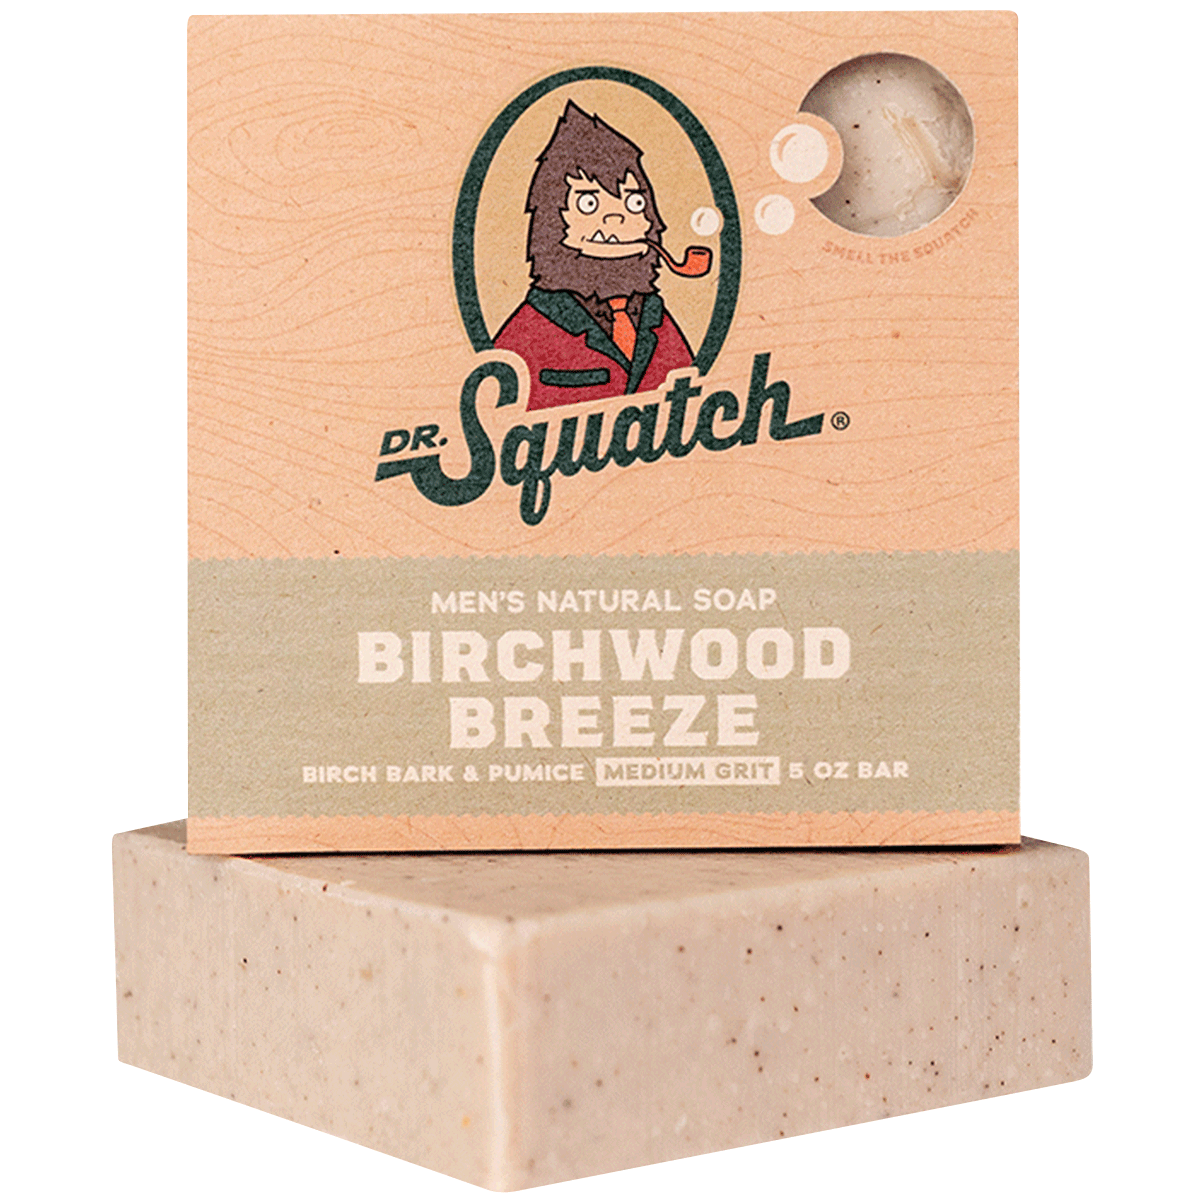 Dr. Squatch Natural Bar Soap, Wood Barrel Bourbon, 5 oz 